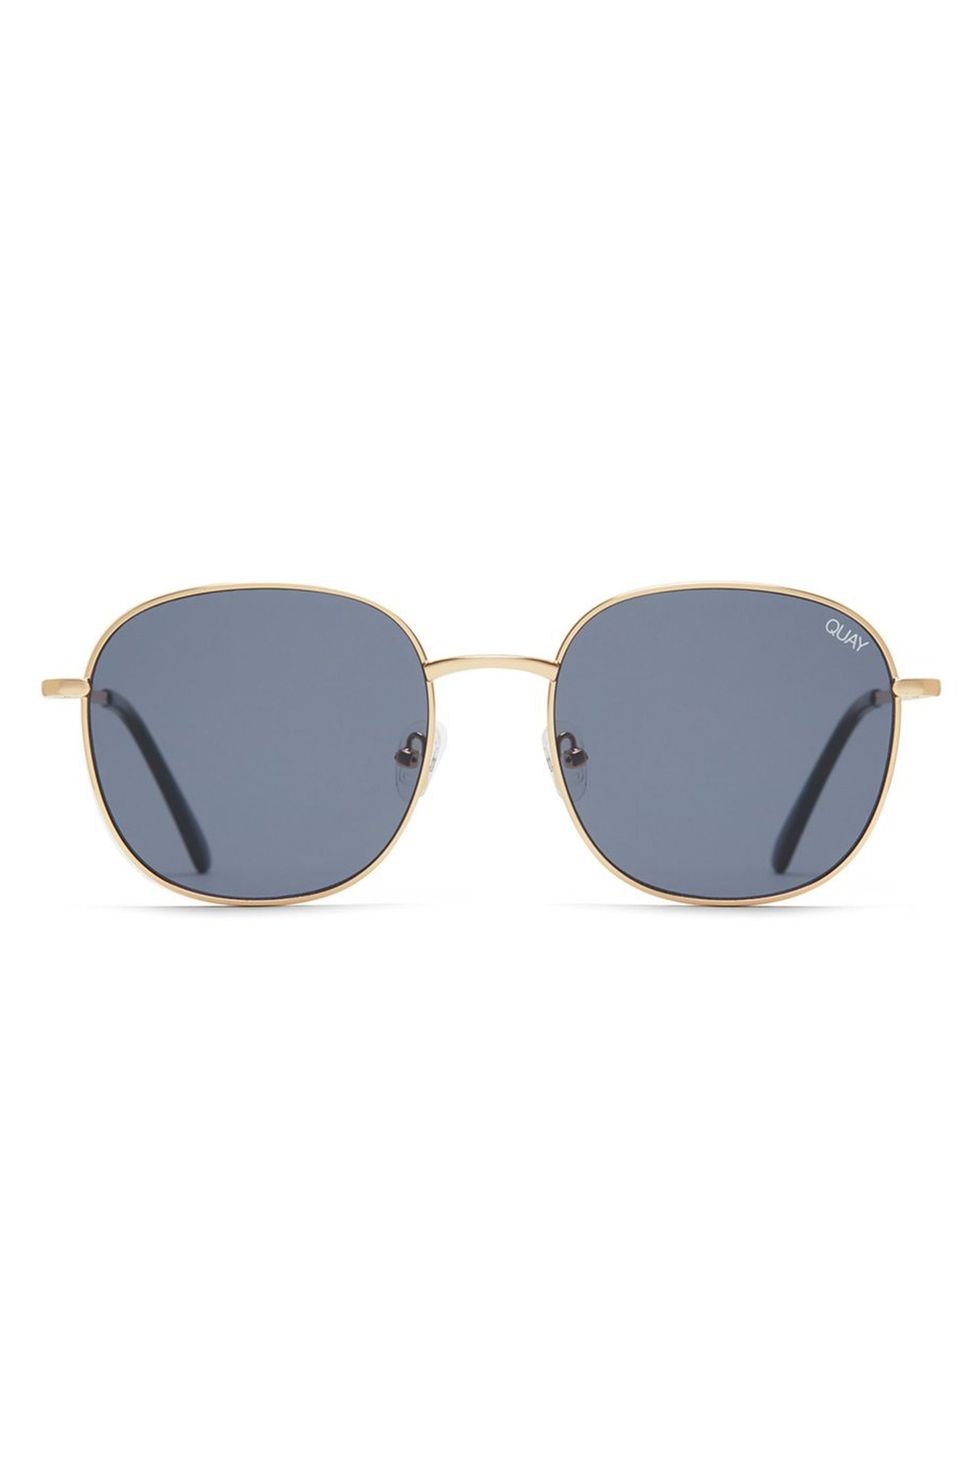 20 Best Sunglasses Brands for 2019 — Where to Buy New Designer Sunglasses